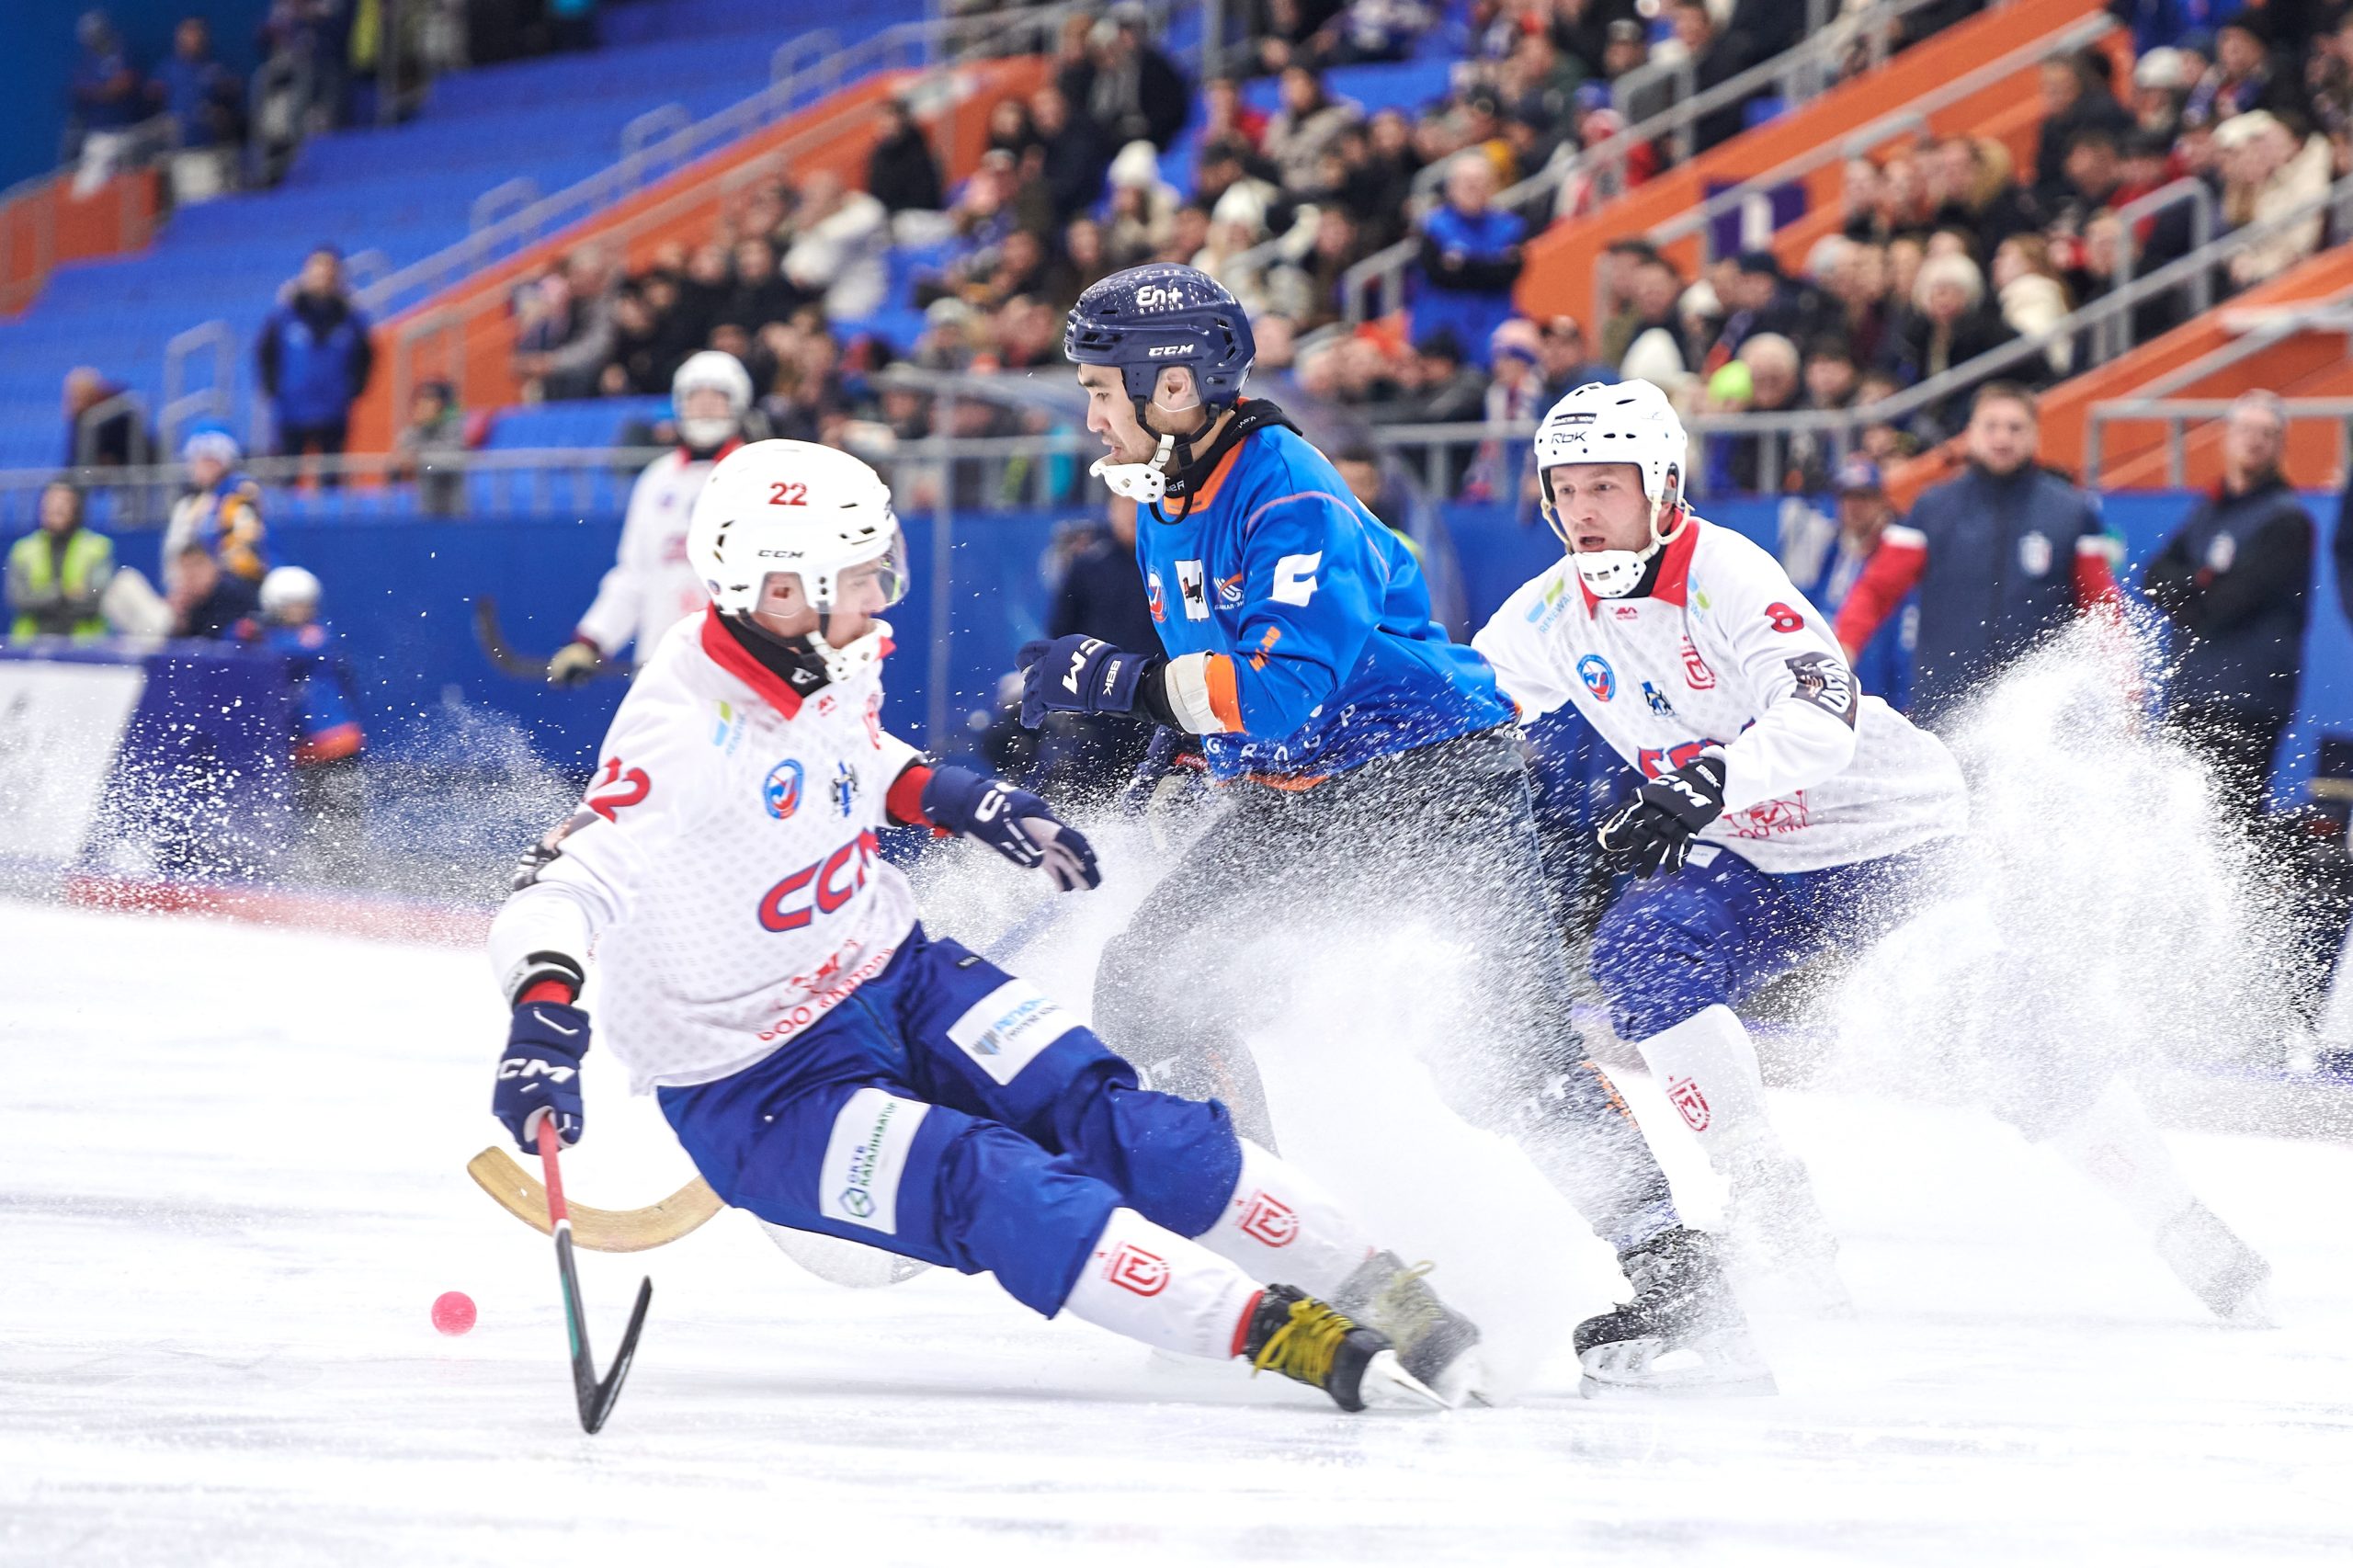 Иркутск байкал энергия хоккей. Байкал матч героев. Следующий хоккейный матч на Байкале пройдет 23 февраля 2025 года.